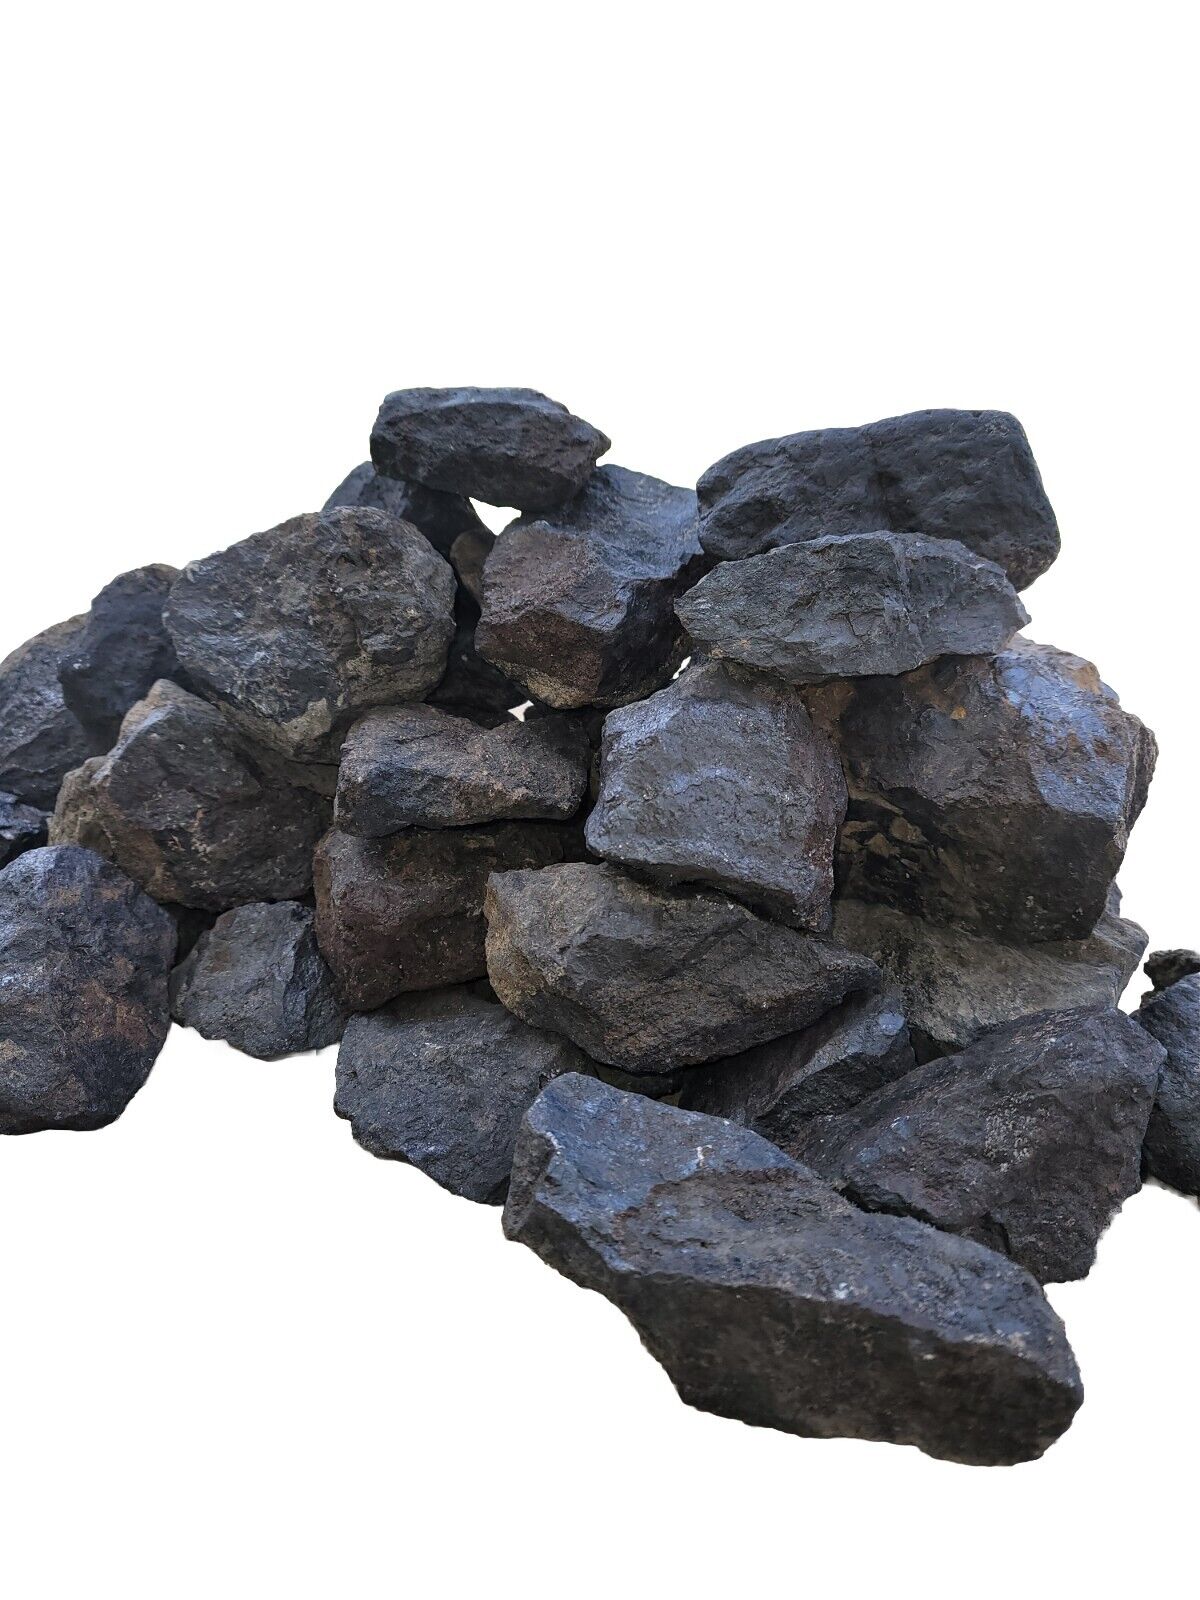 Dark Iron Ore Magnetite Utah Iron Mountain Iron Ore Rocks 3-5lb Health Benefits